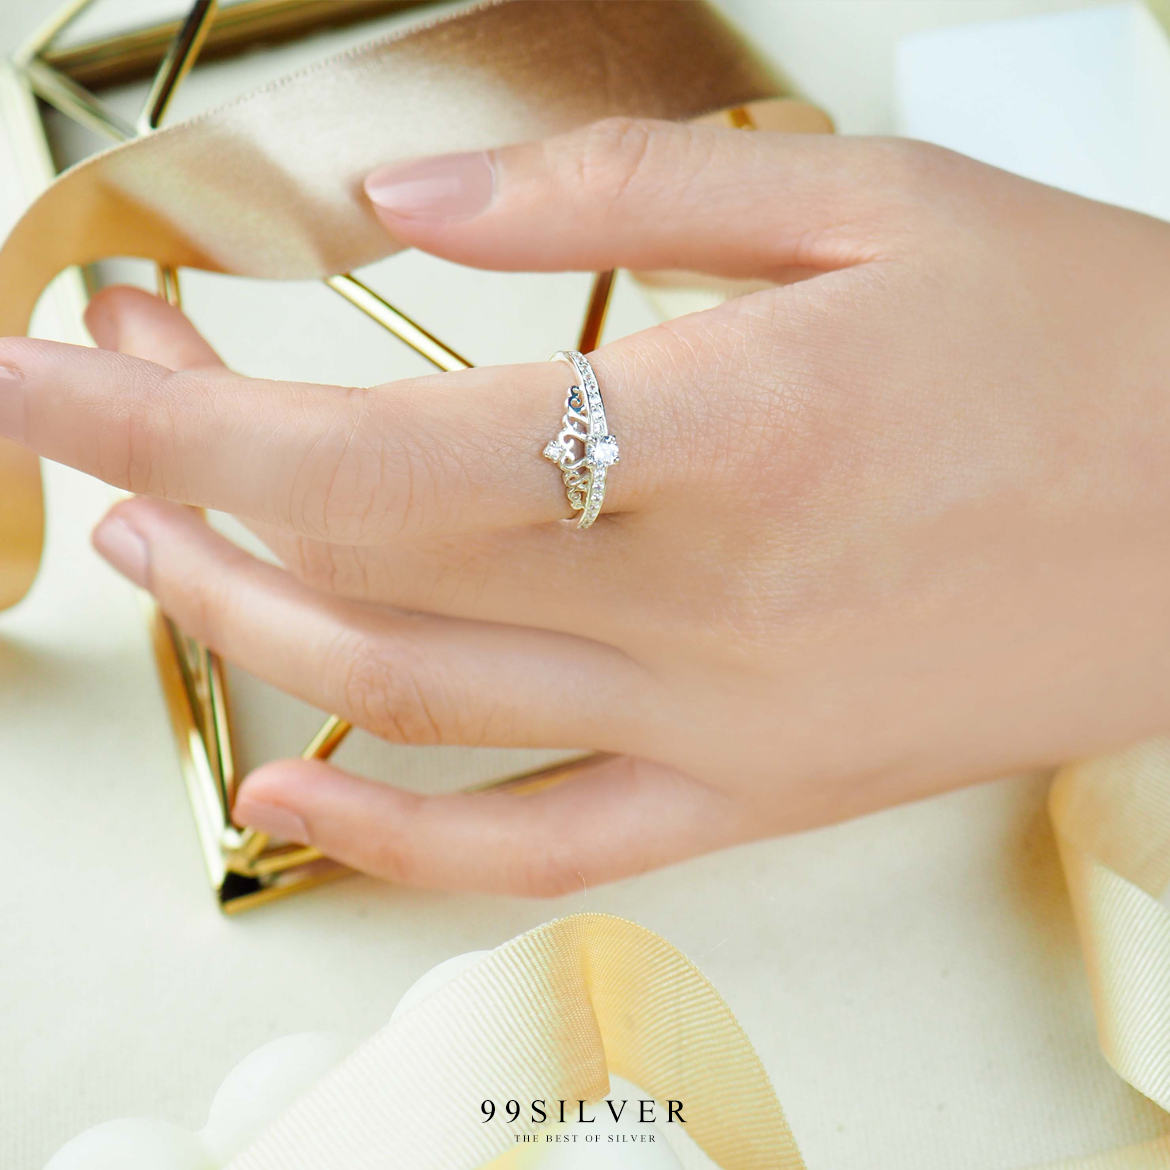 แหวนมงกุฎเจ้าหญิง ประกับเพชรยอด 1 เม็ดพร้อมเพชรเม็ดเล็กที่ก้านแหวน น่ารักสวยงาม